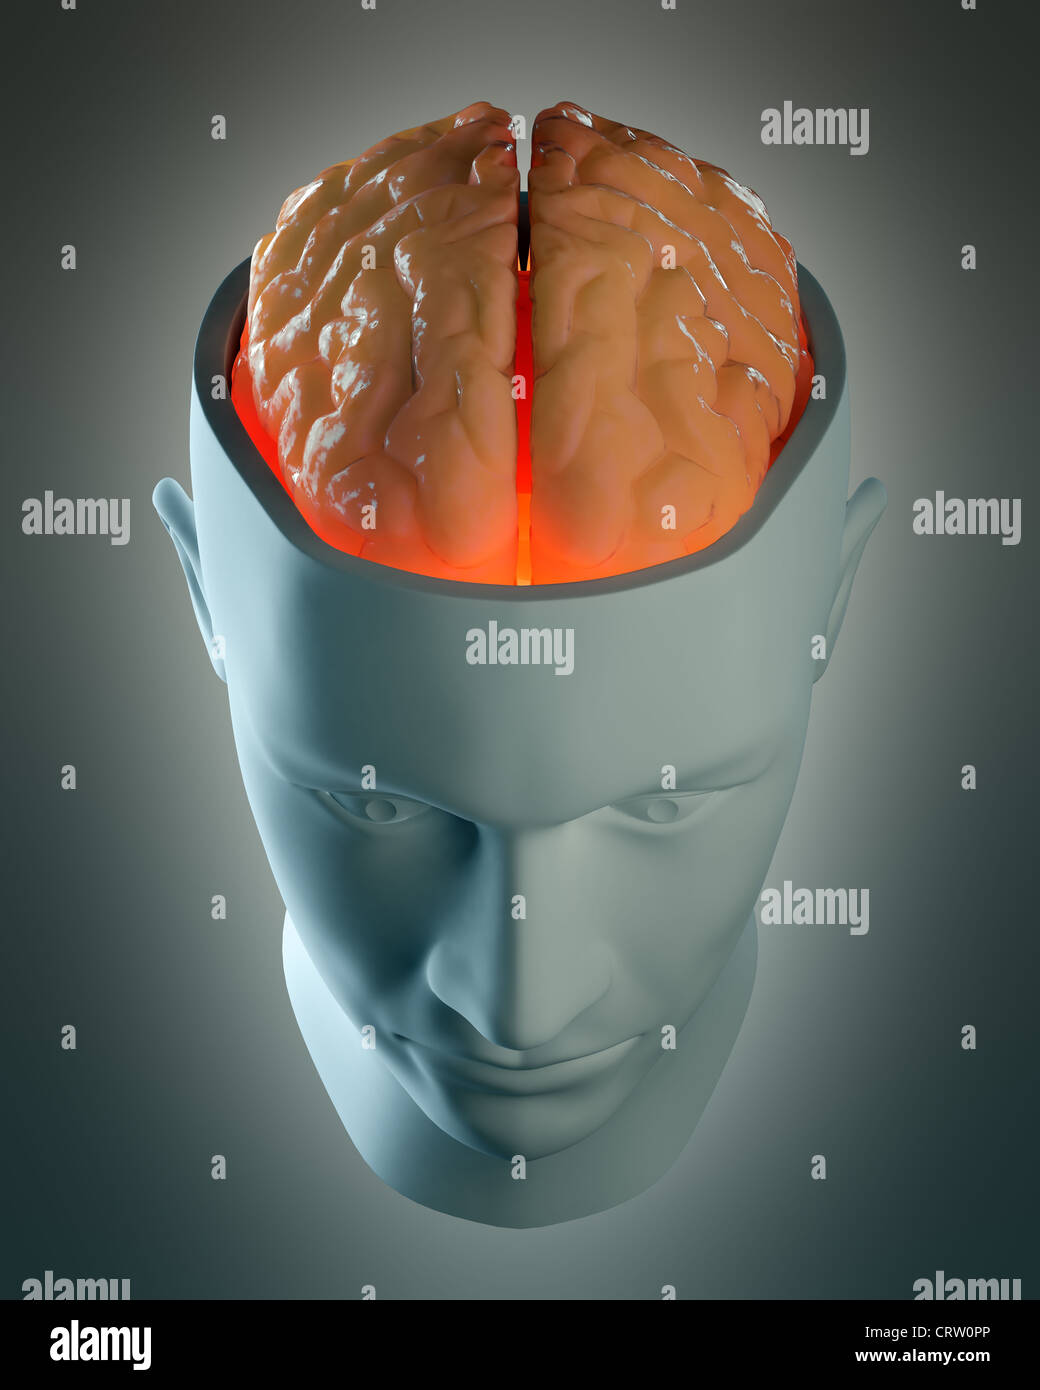 Как видеть мозгом. Мозг в голове. Разрезанный головной мозг.